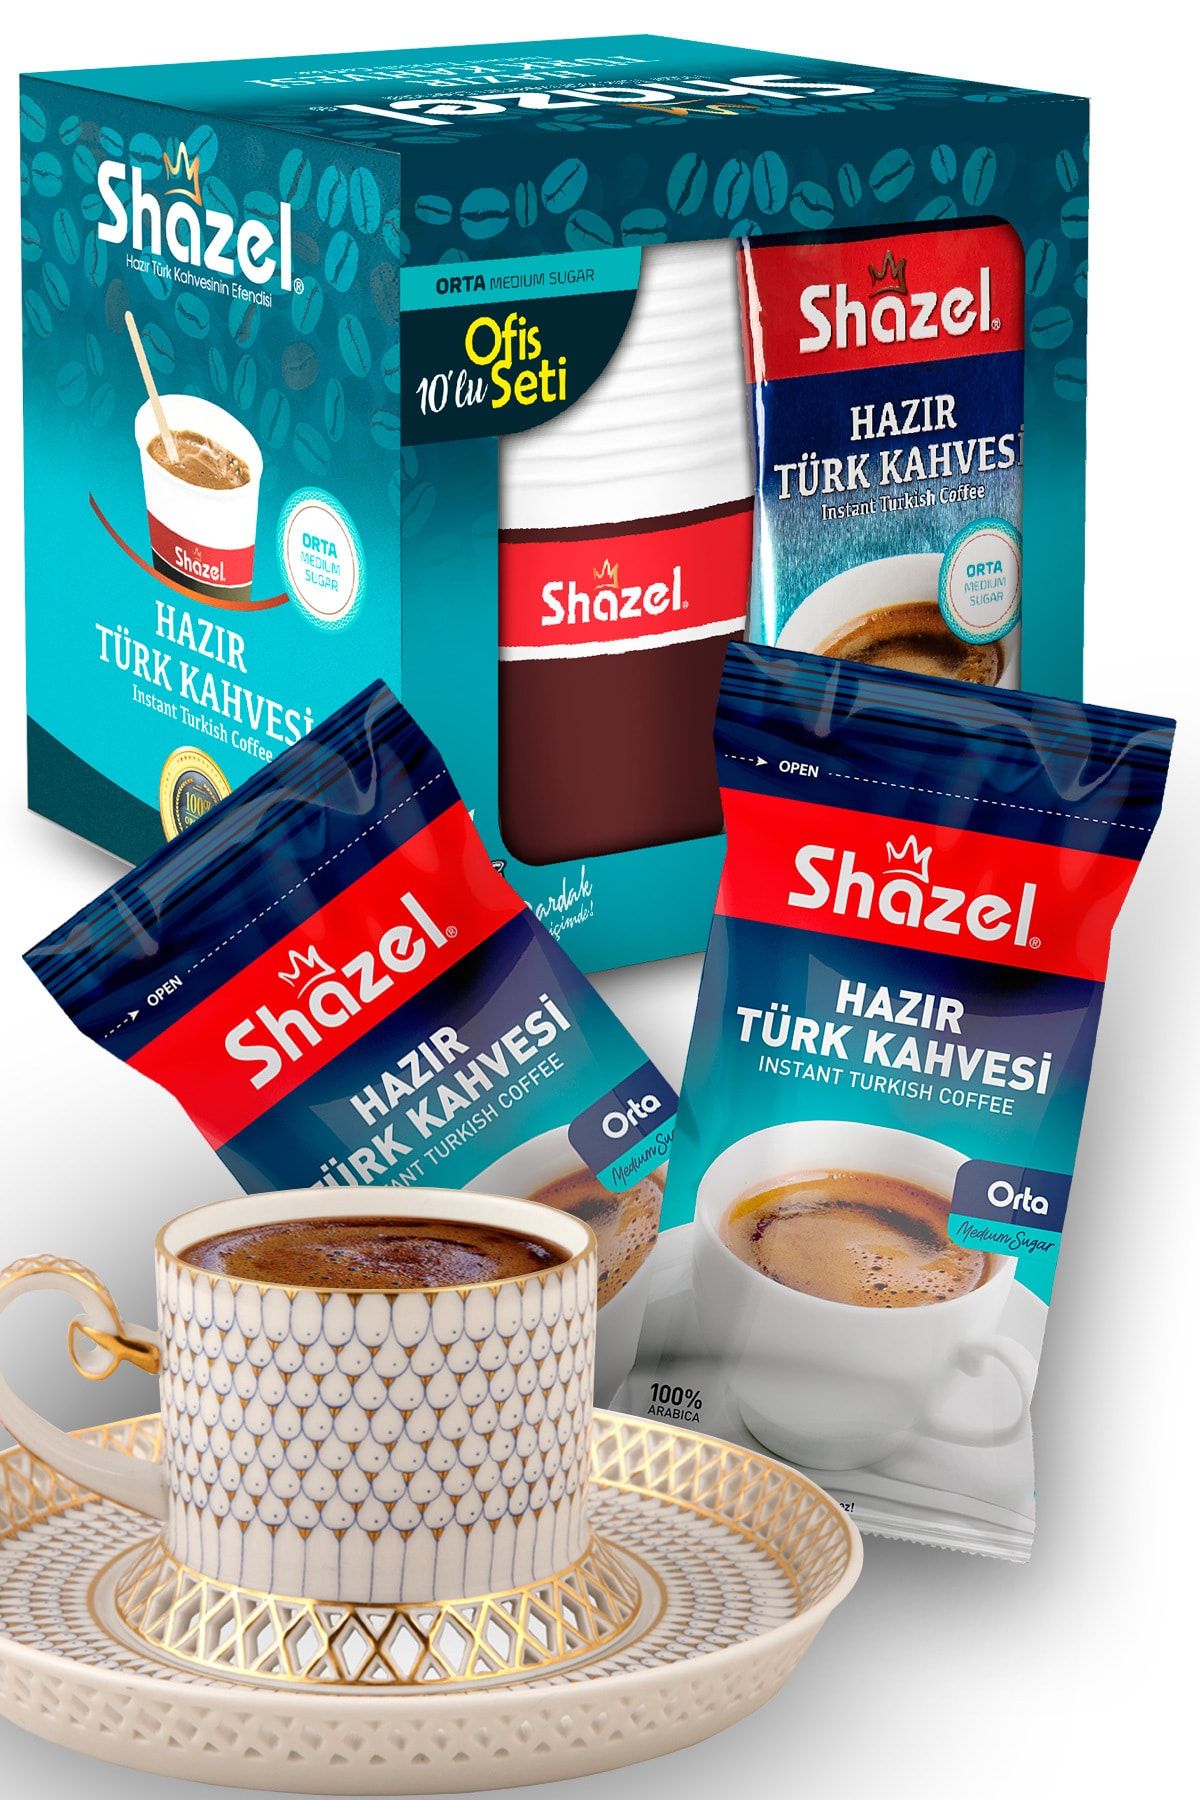 Shazel Orta Şekerli Hazır Türk Kahvesi 40'lu Bardaklı Özel Set